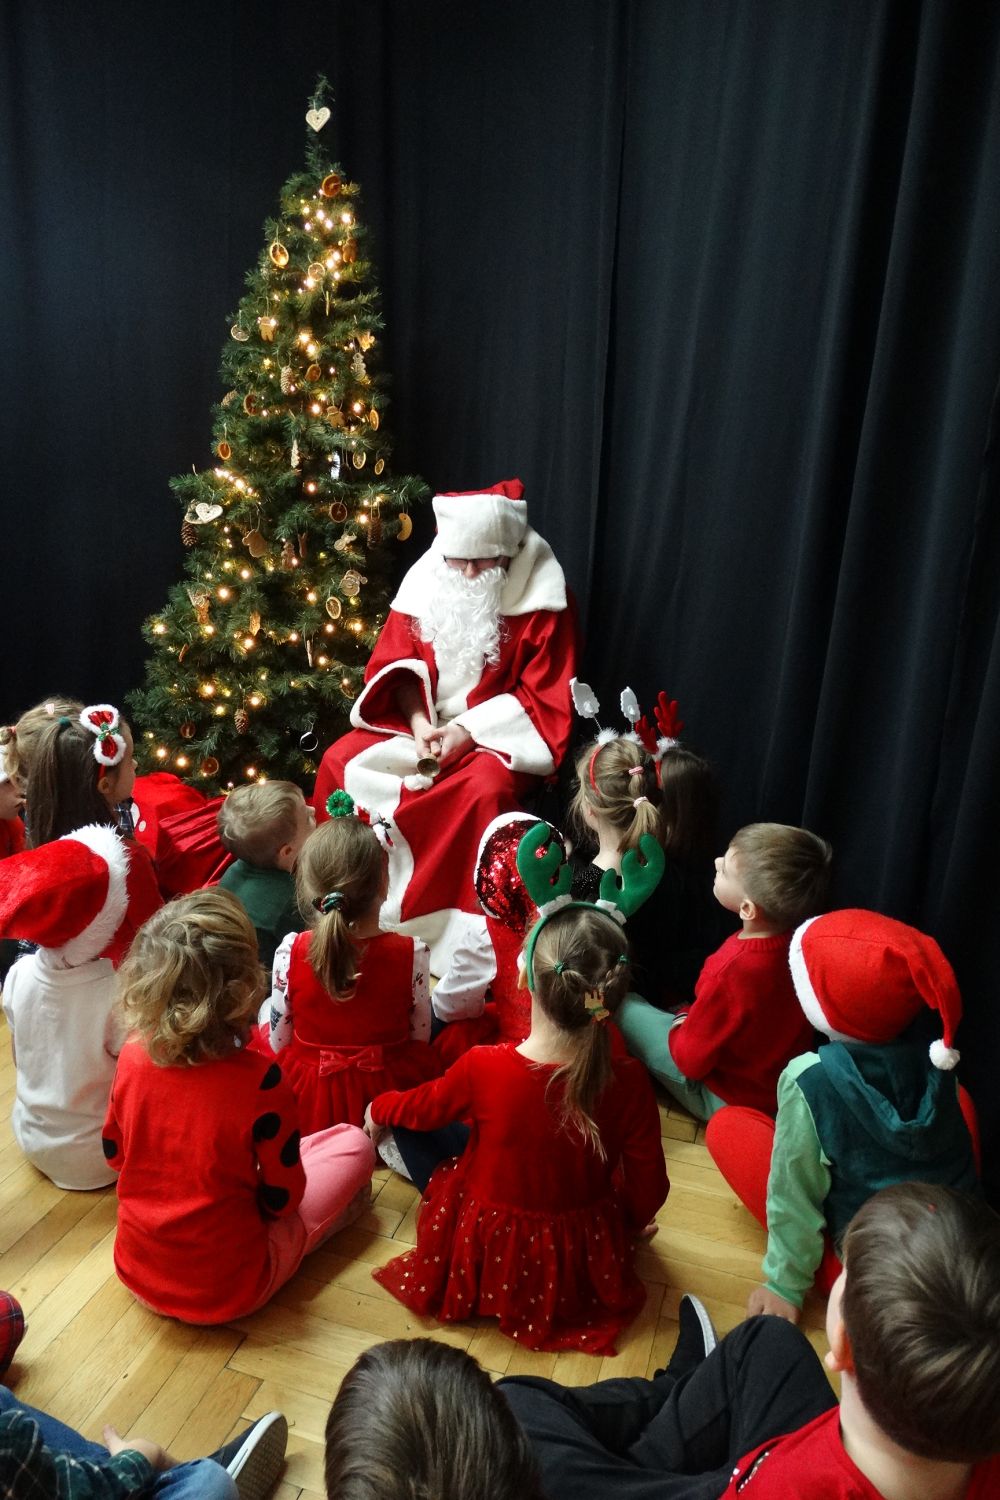 Dzieci z grupy 5 siedzą na podłodze i patrzą w stronę świętego mikołaja. Mikołaj siedzi na krześle obok przystrojonej choinki